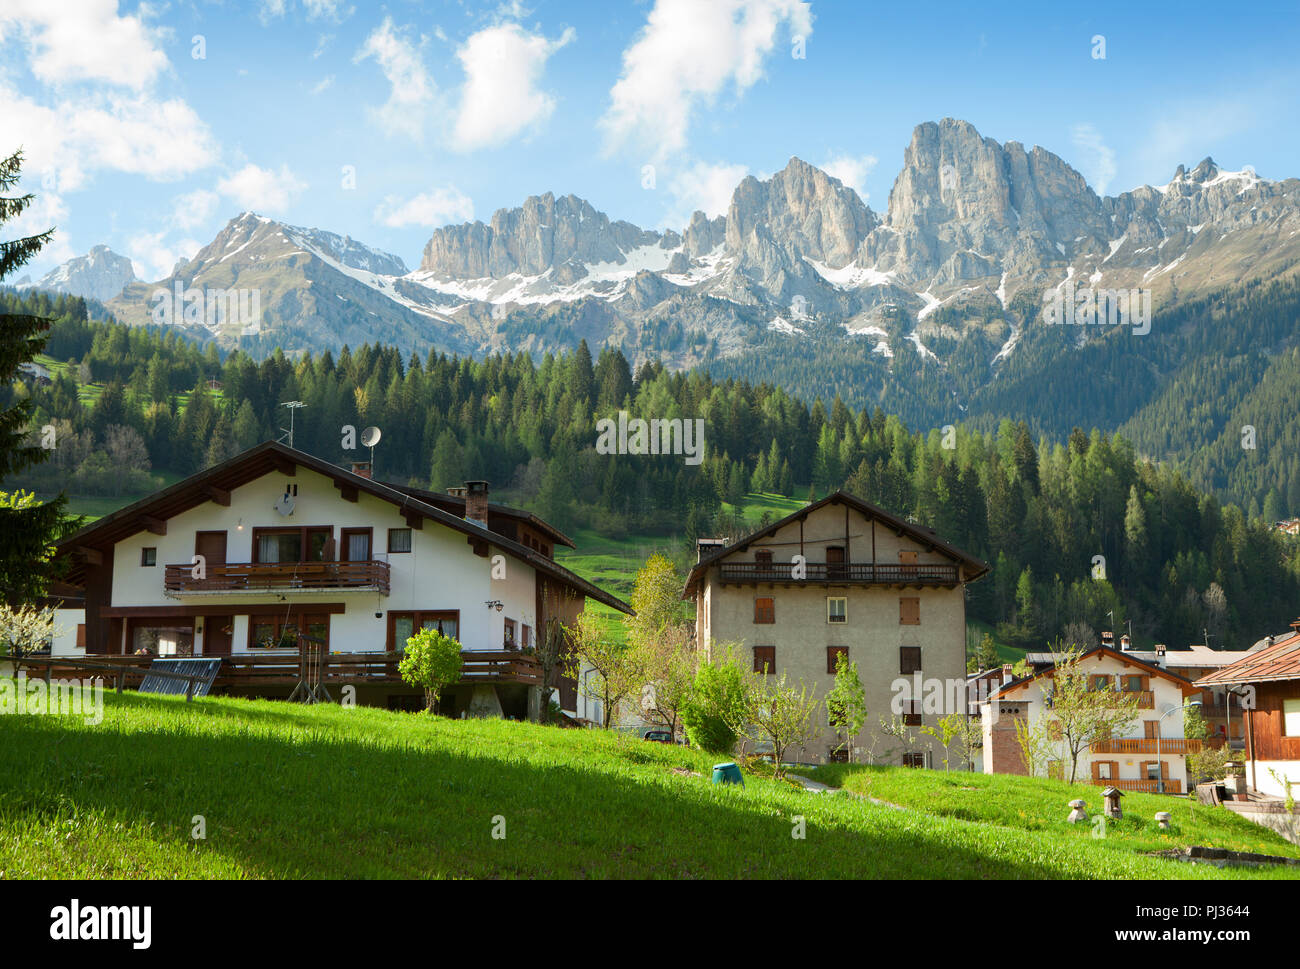 Häuser werden von den Dolomiten, Comune di Falcade, Italien umgeben. Blick auf einen typischen alpinen Wohn- Struktur. Stockfoto